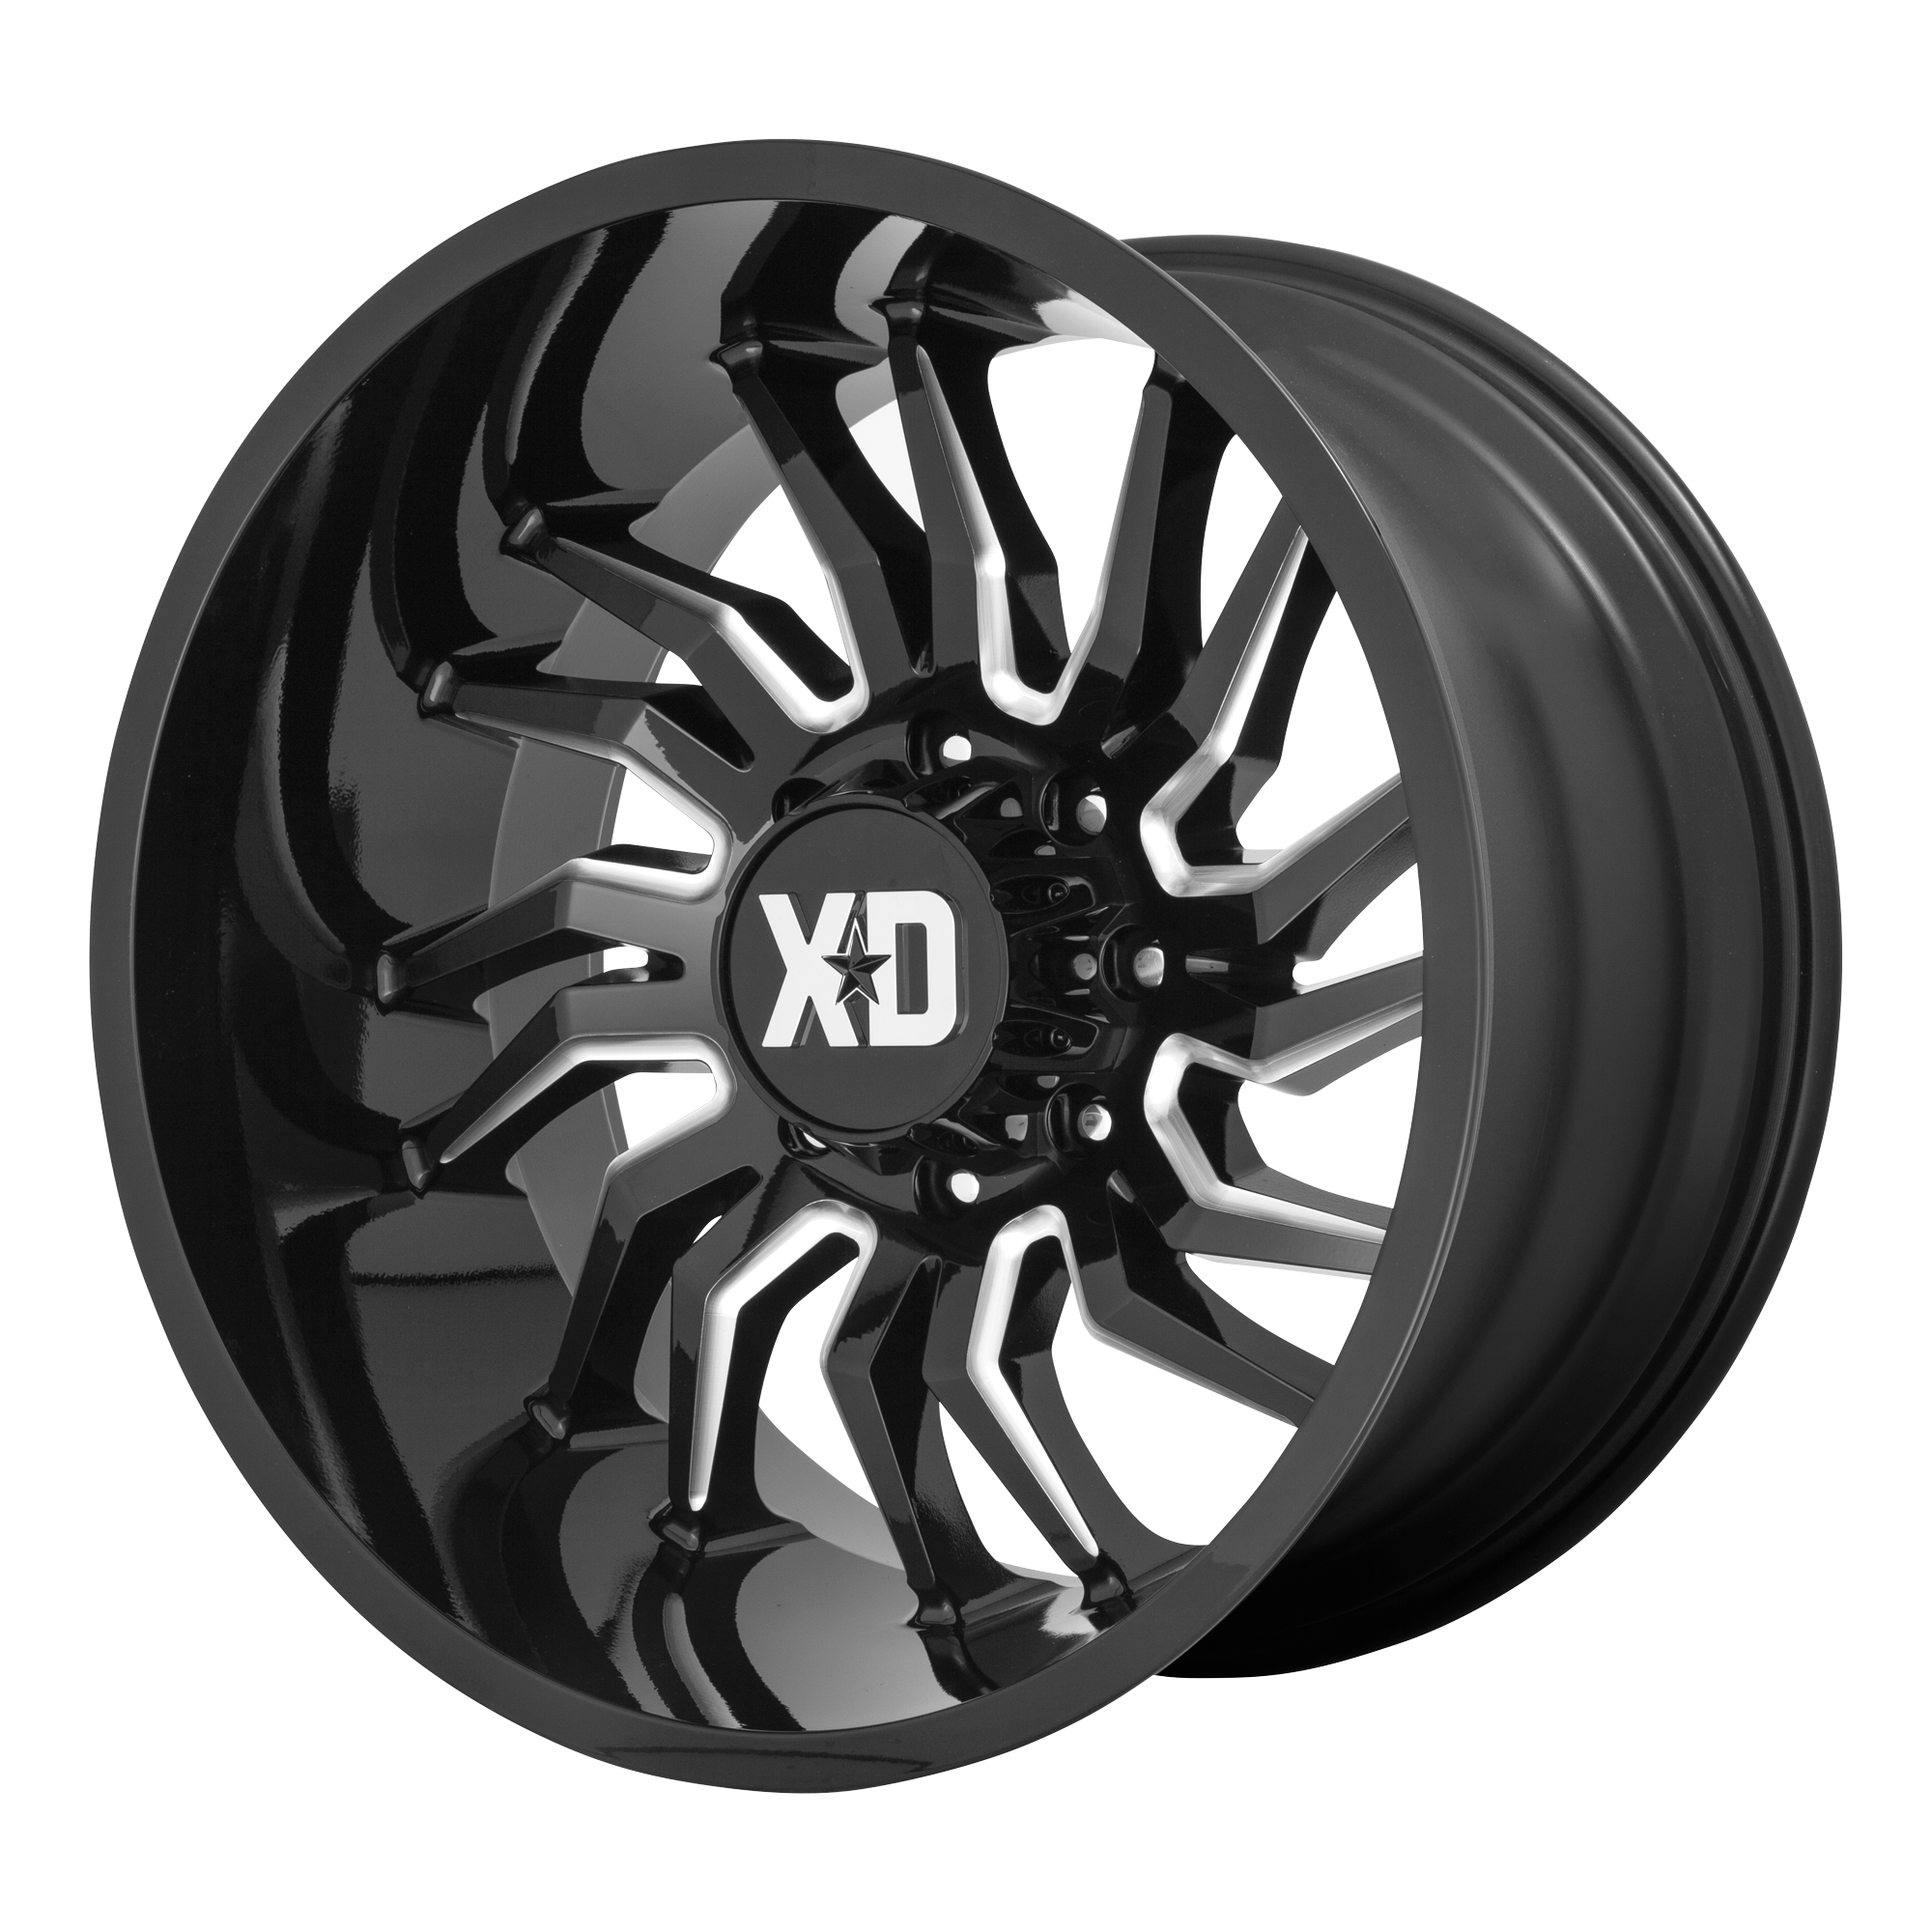 XD 22"x10" Non-Chrome Gloss Black Milled Custom Wheel ARSWCWXD85822087318N